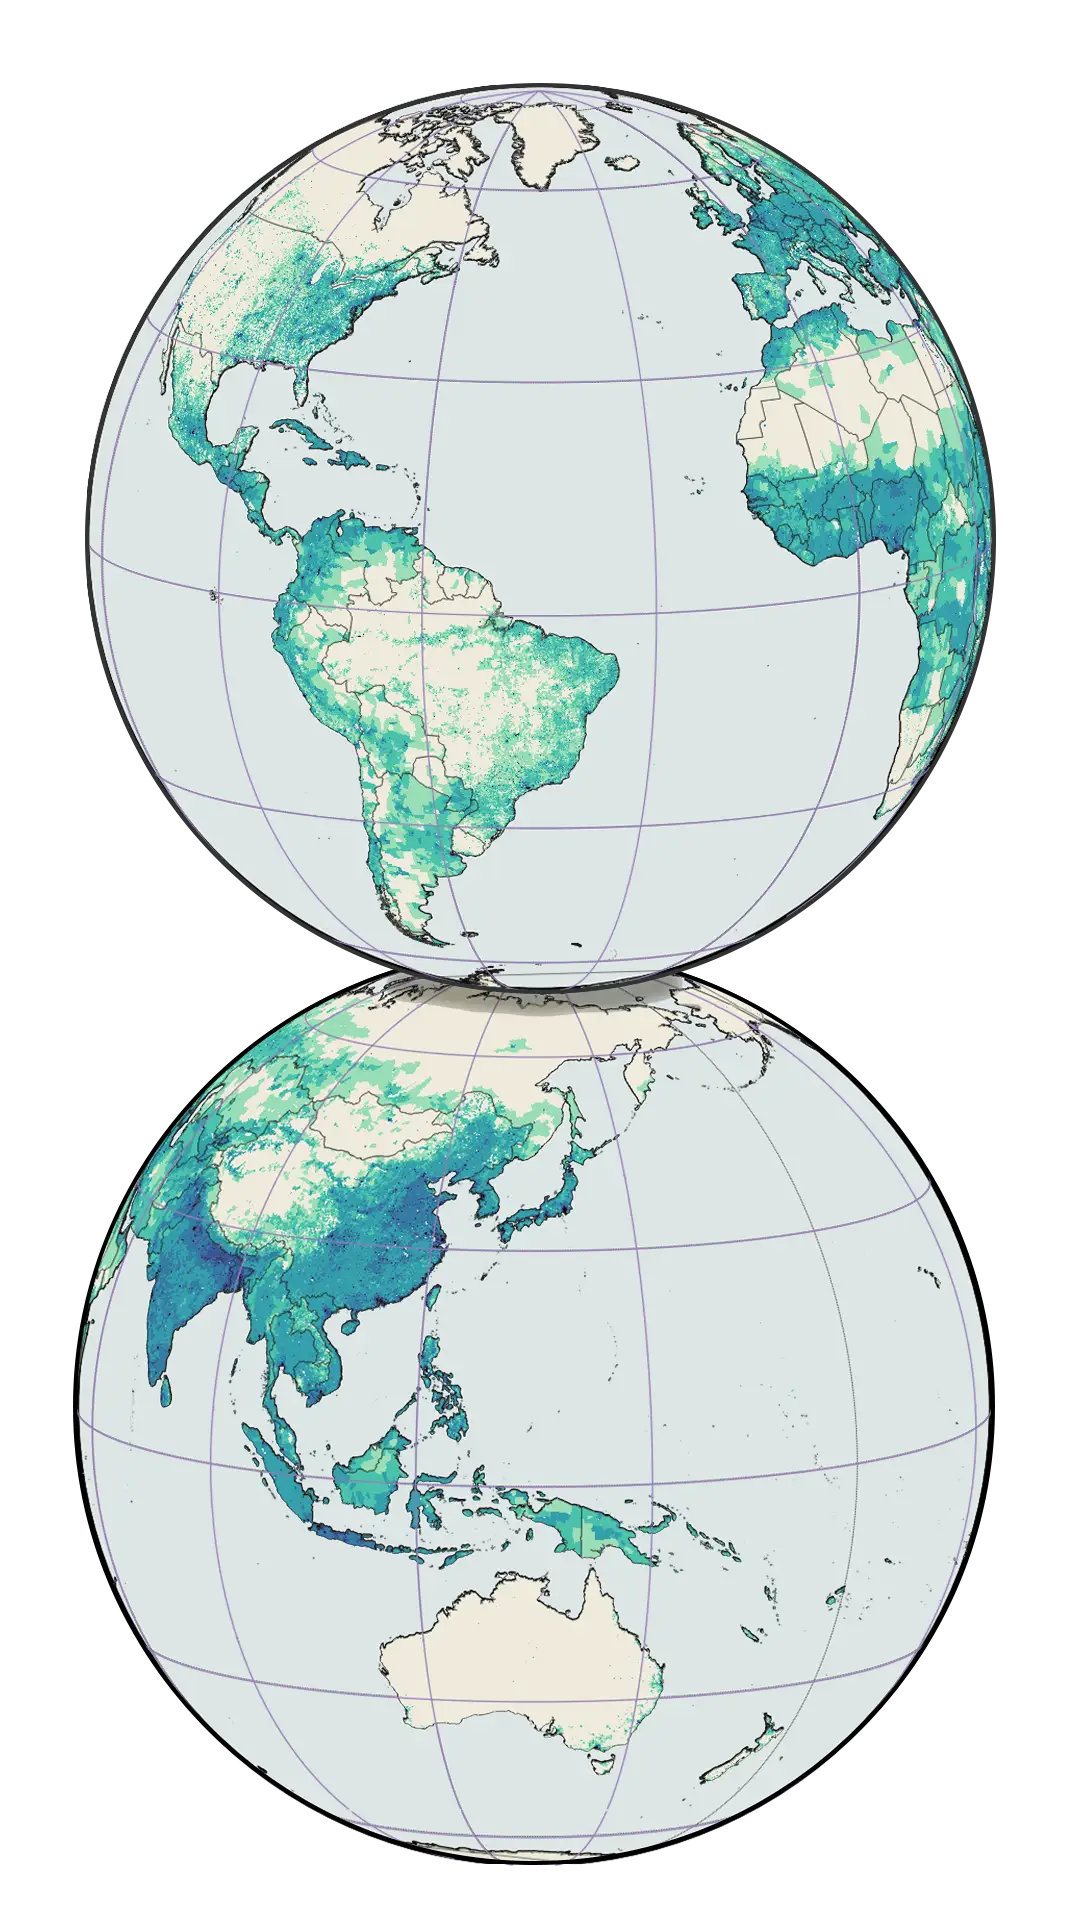 Zemljevid sveta, ki prikazuje svetovno prebivalstvo